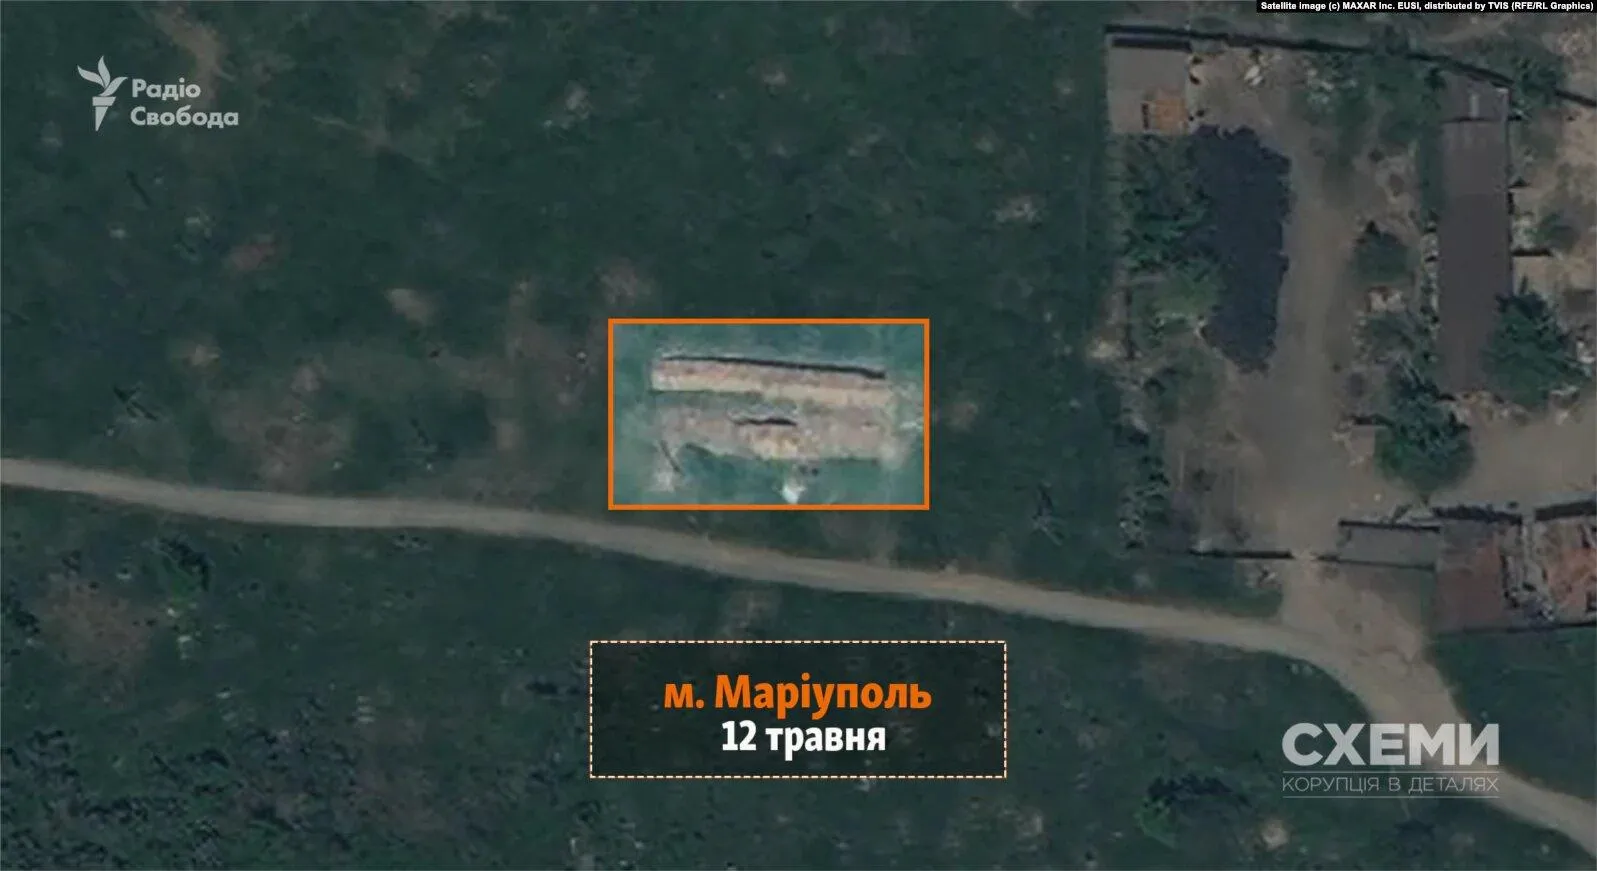 Фото масового поховання  з супутника за 12 травня